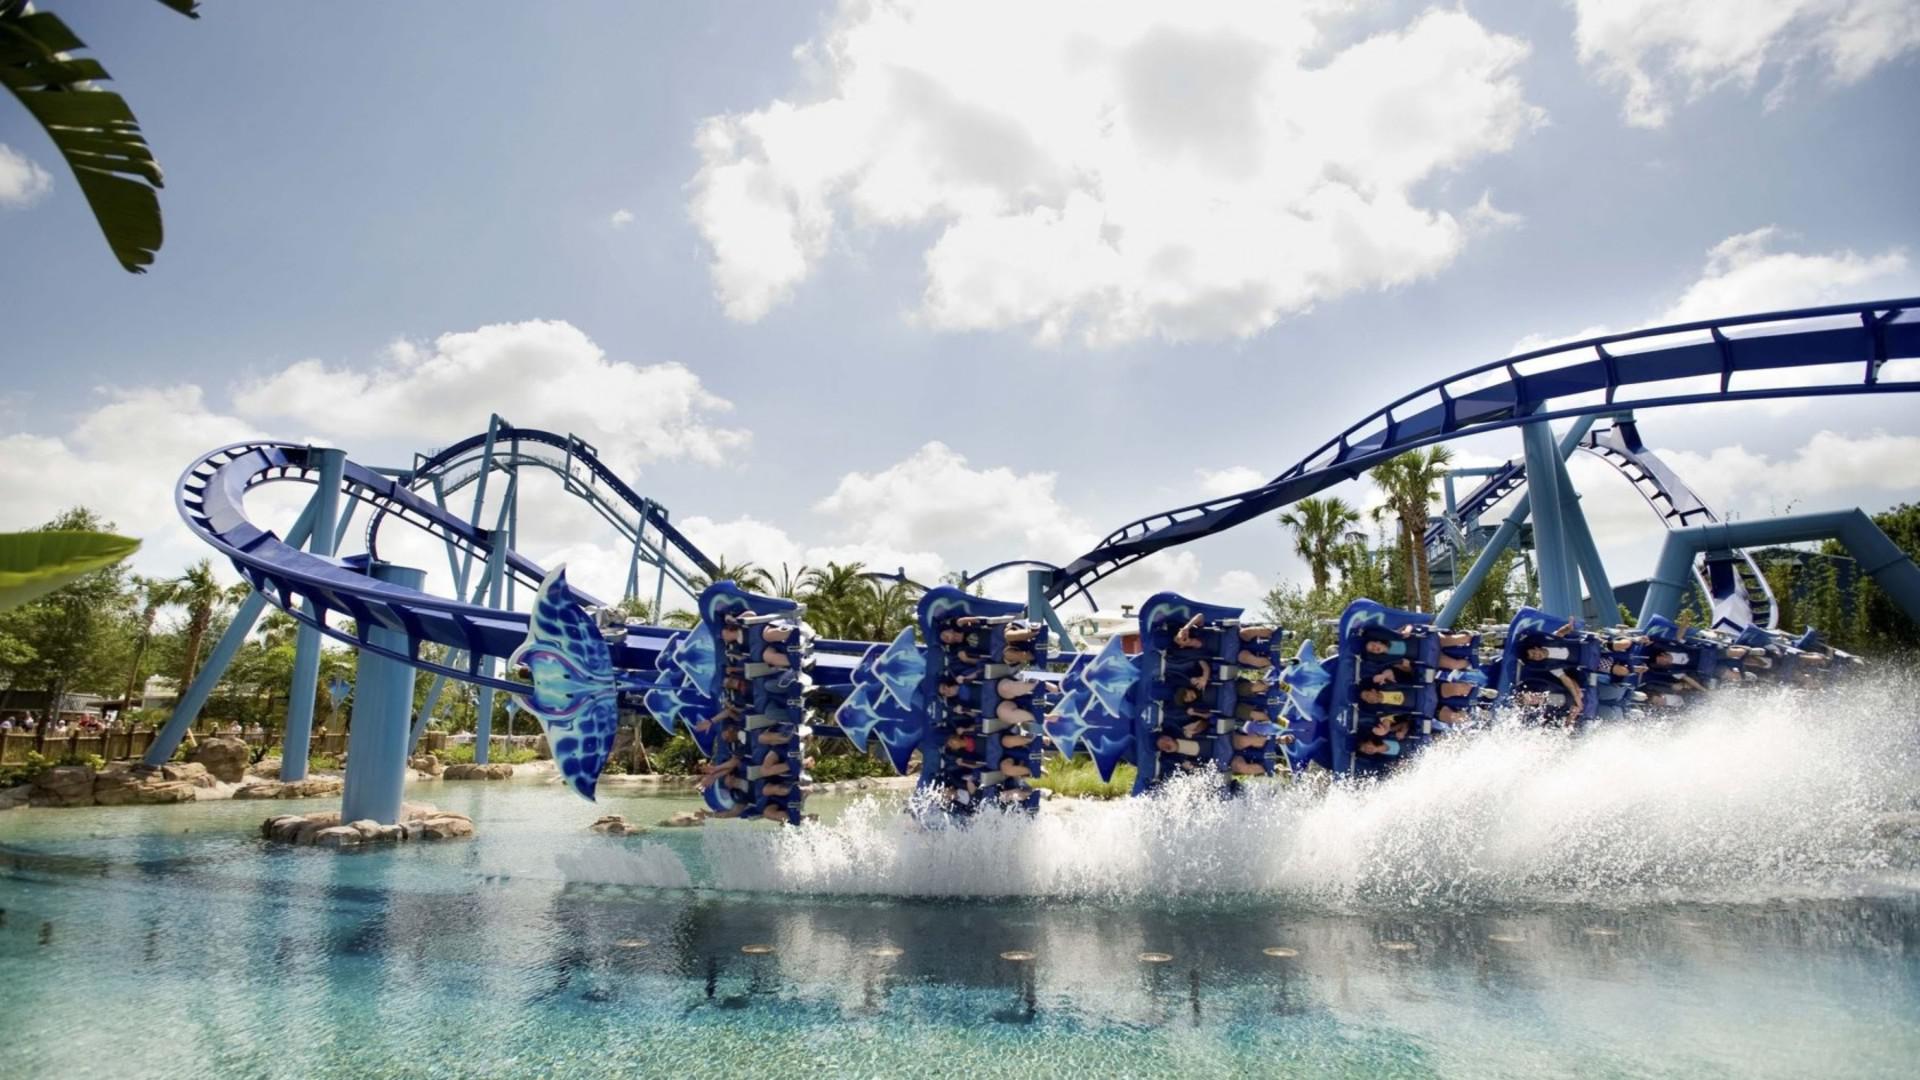 Manta Flying Roller Coaster Seaworld Orlando Wallpaper